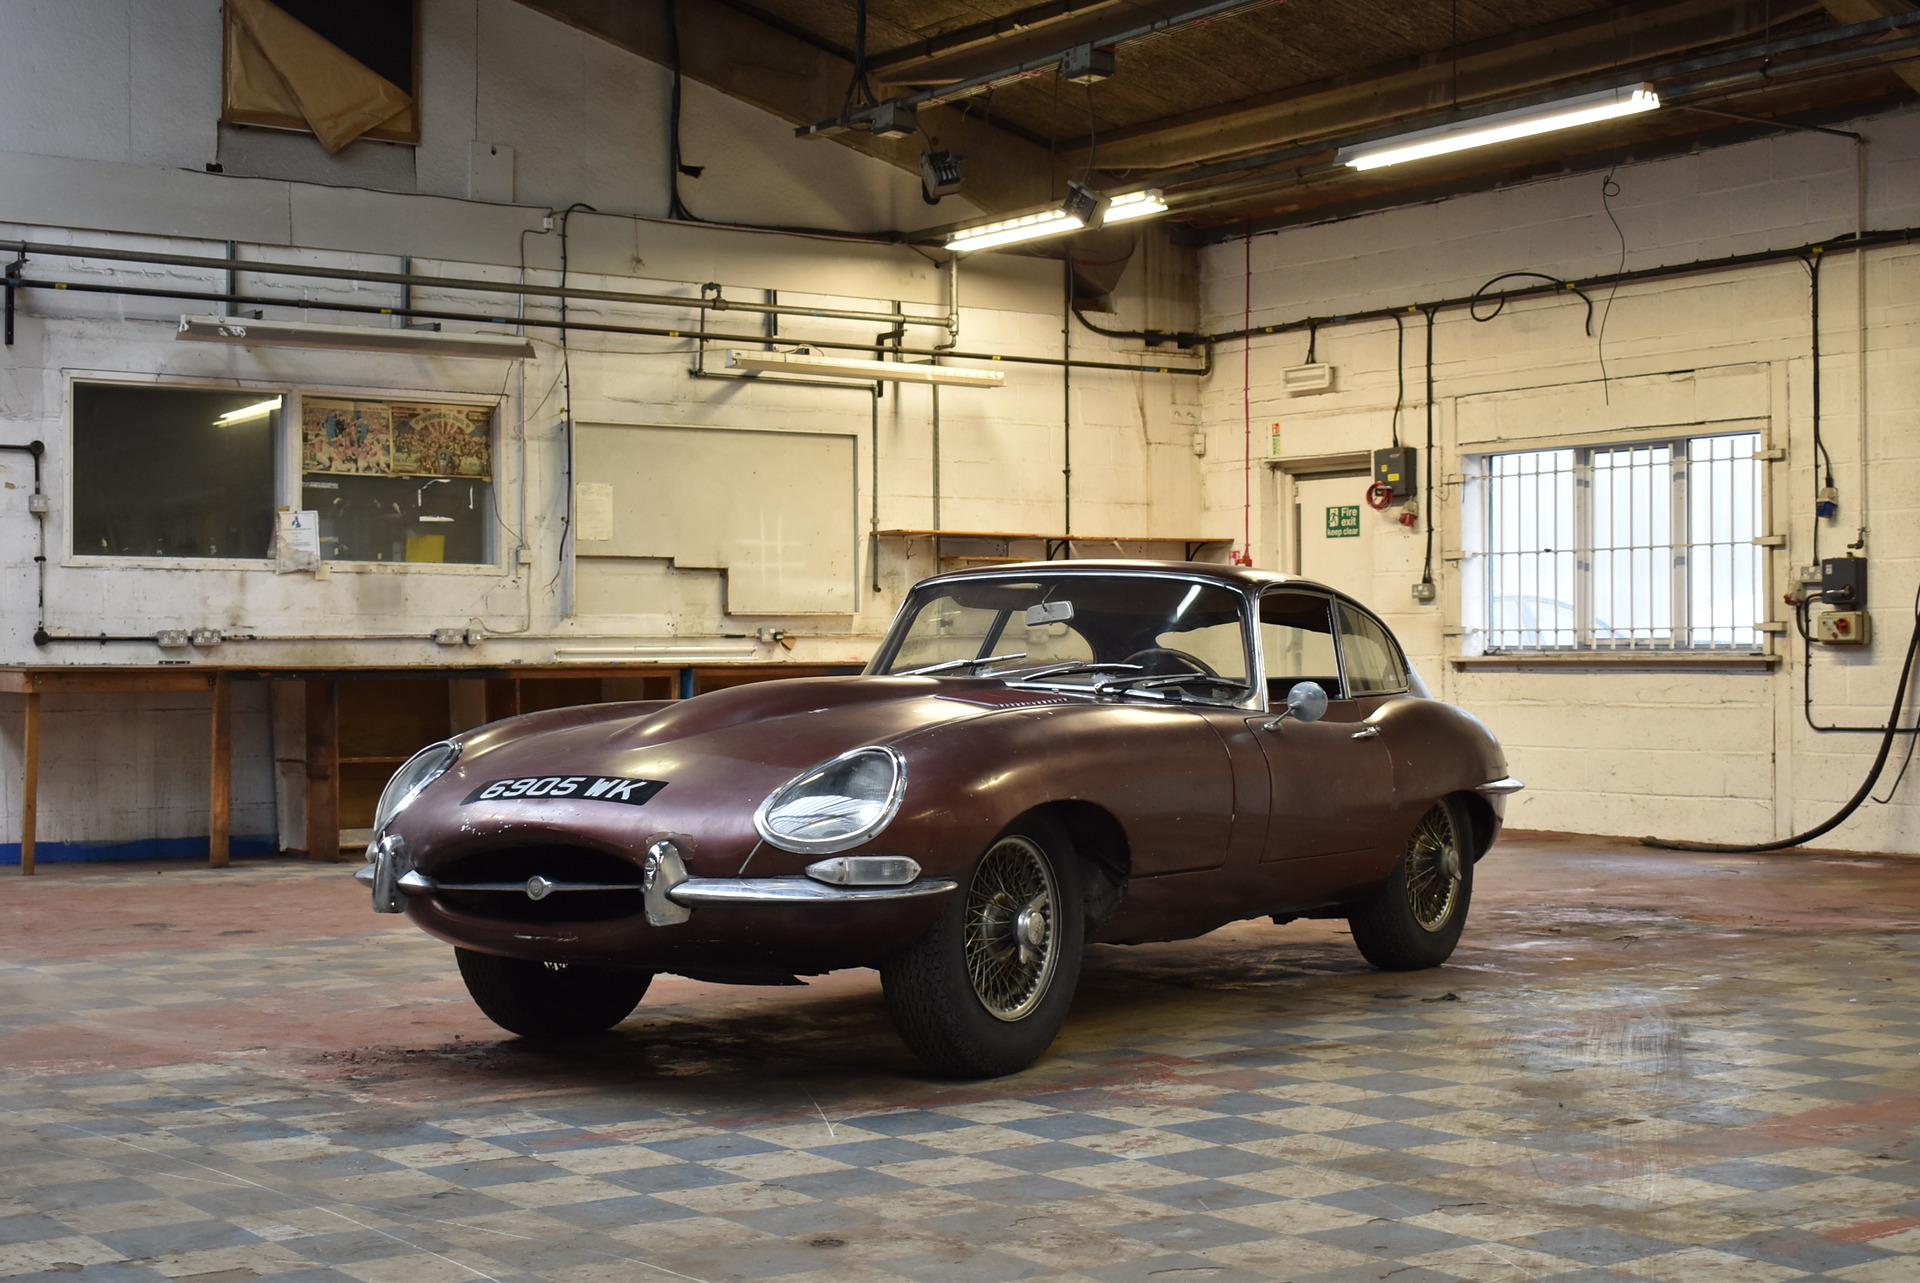 Restoration Group Hilton & Moss restores rare series 1 Jaguar E-type to former glory